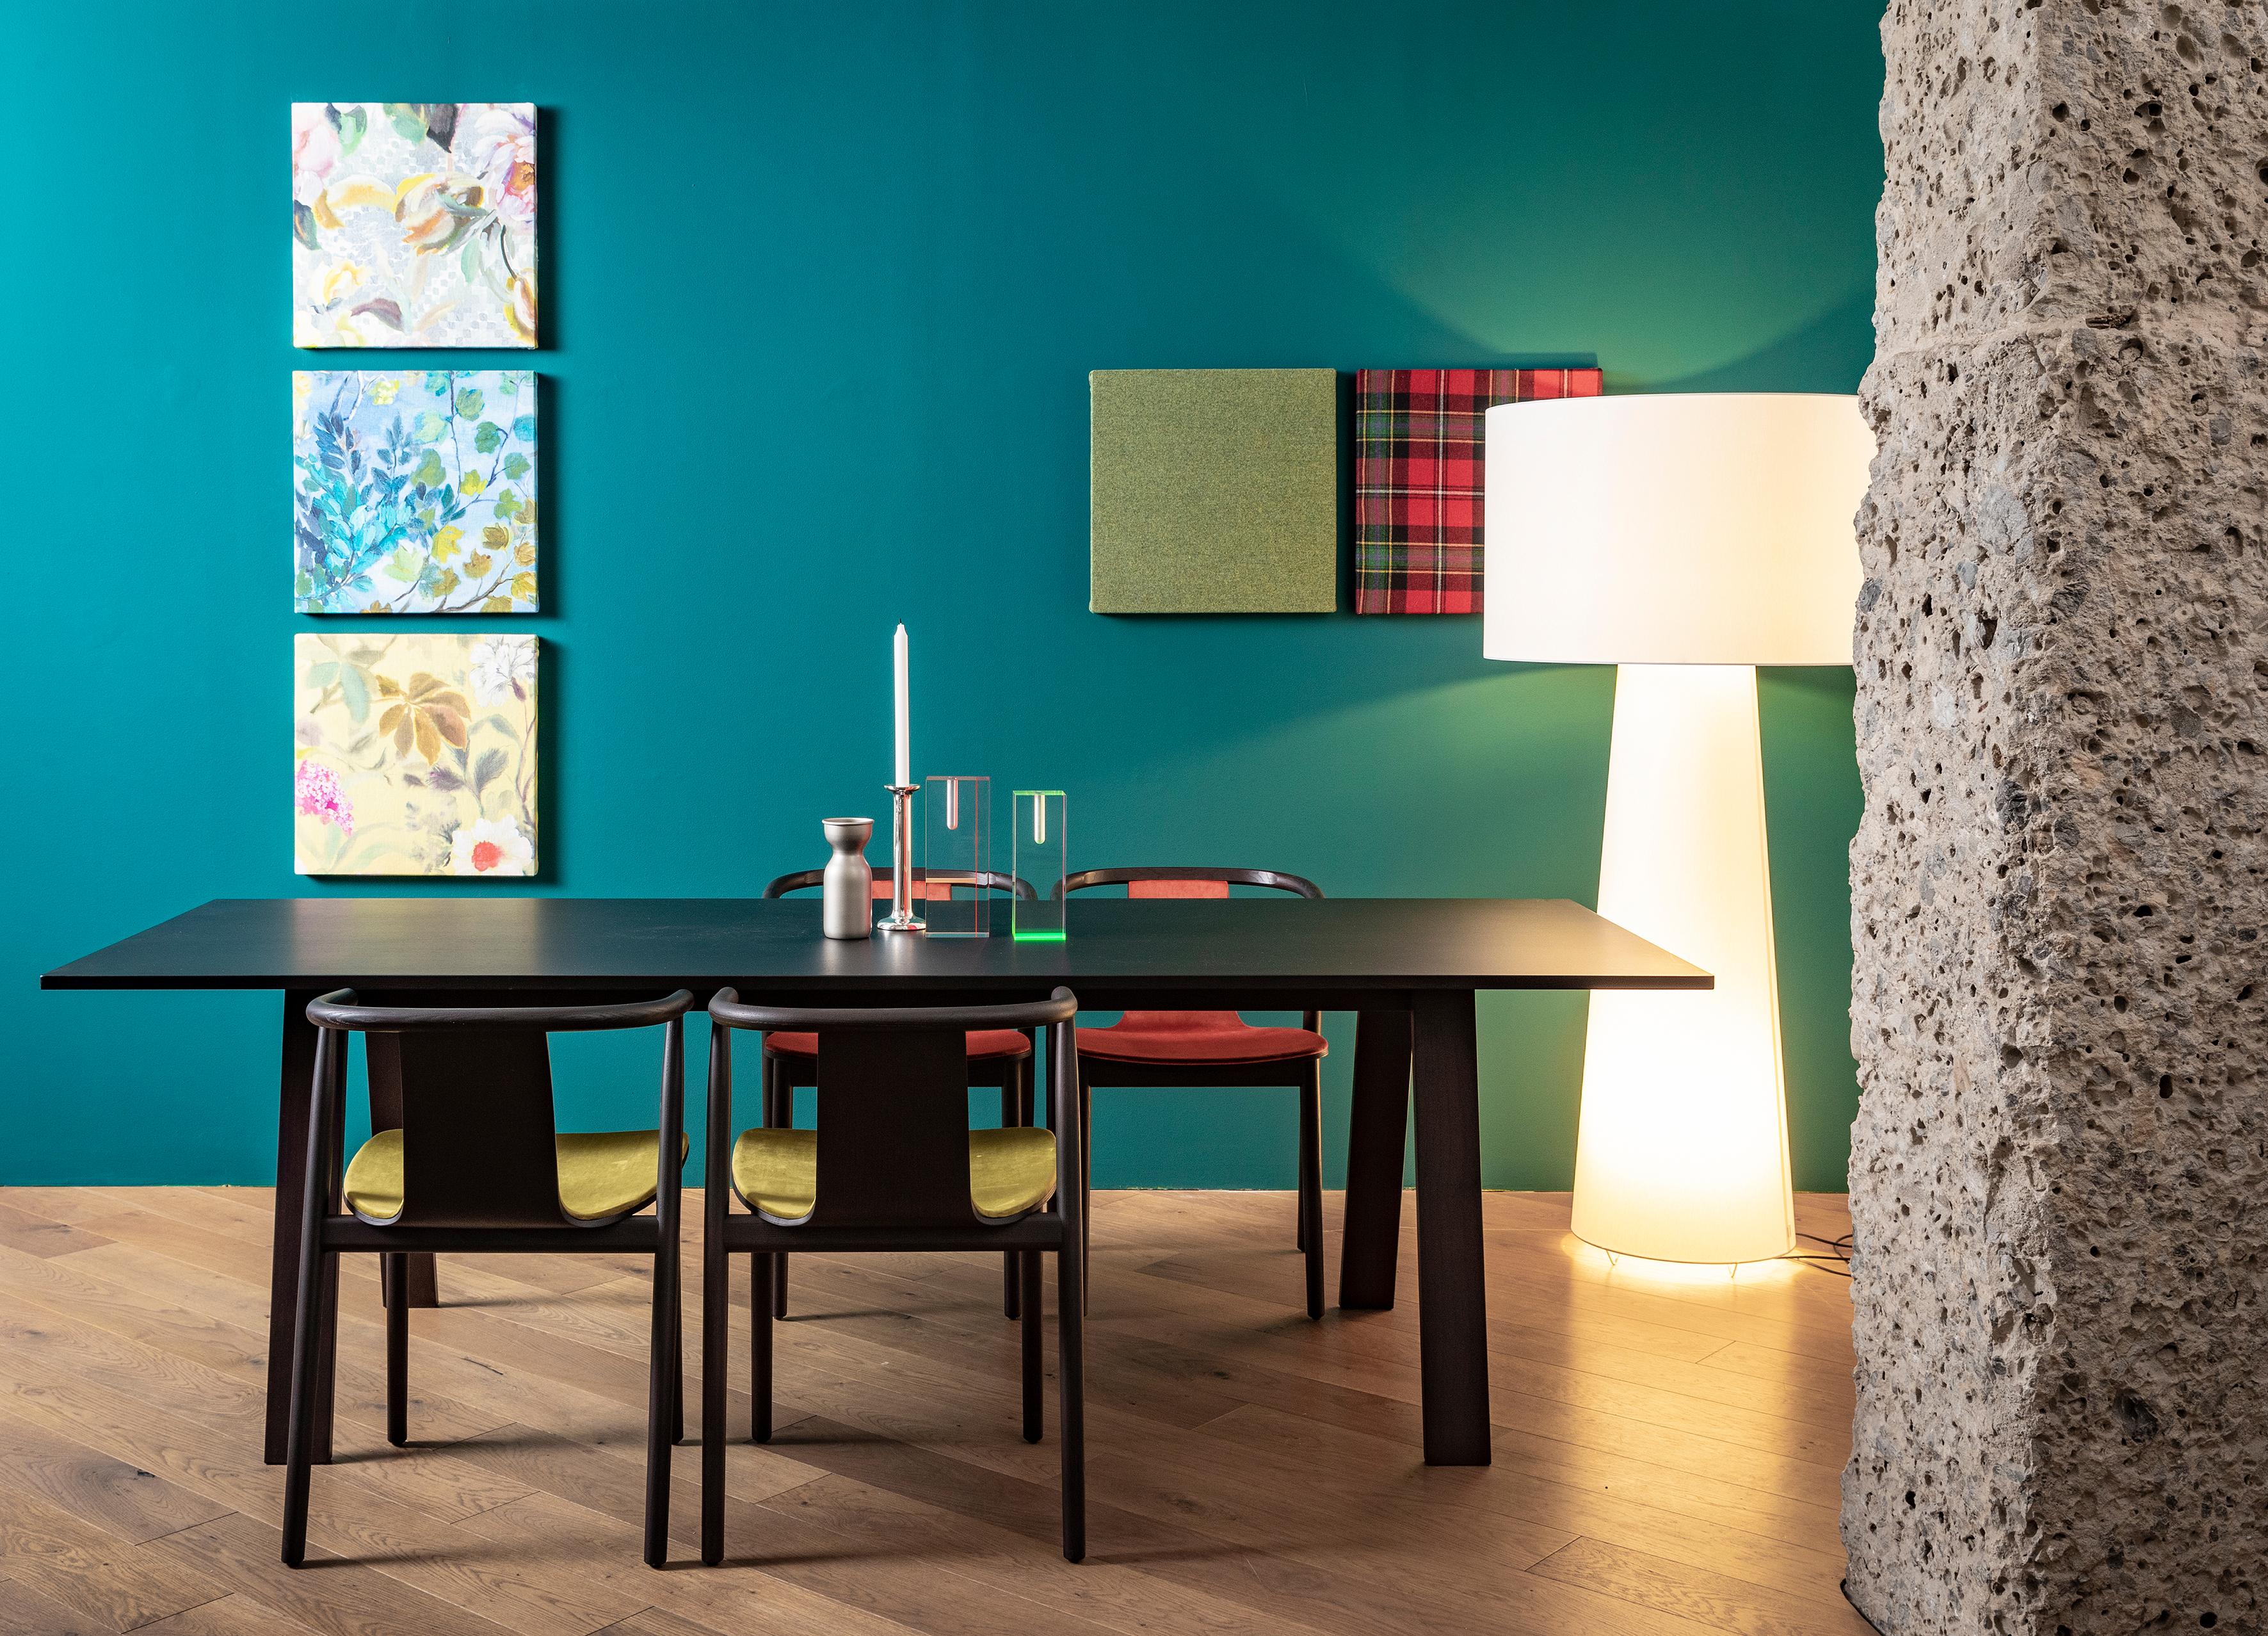 La table Bac, conçue par Jasper Morrison, est fabriquée en bois de frêne massif avec une finition blanchie, teintée wengé, bleu Shanghai ou teintée noir. Disponible en version ronde et rectangulaire.
 
Dessus : panneau en bois de moyenne densité